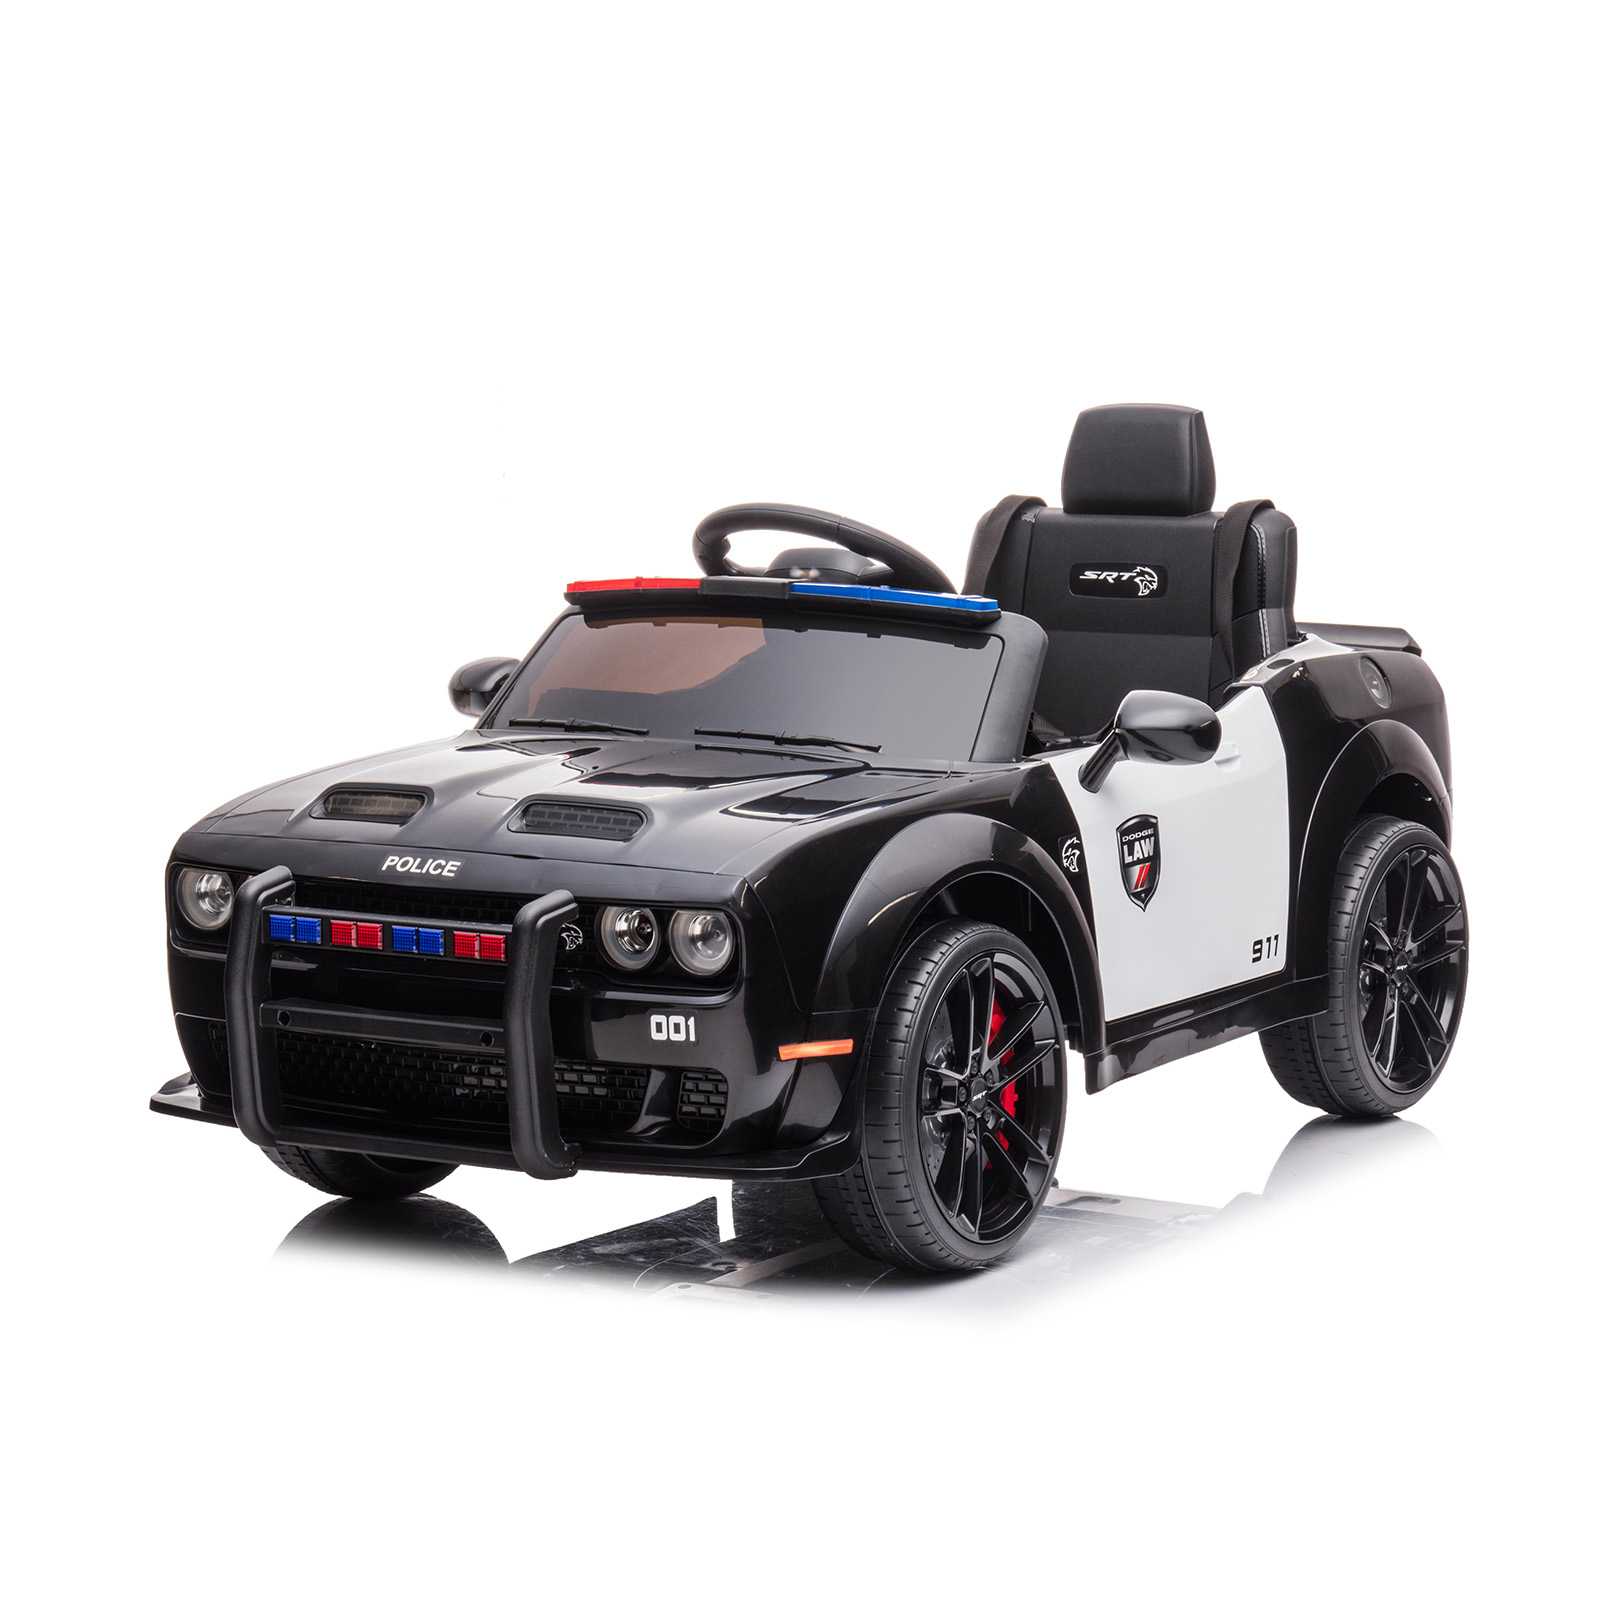 Dodge Police électrique pour enfants